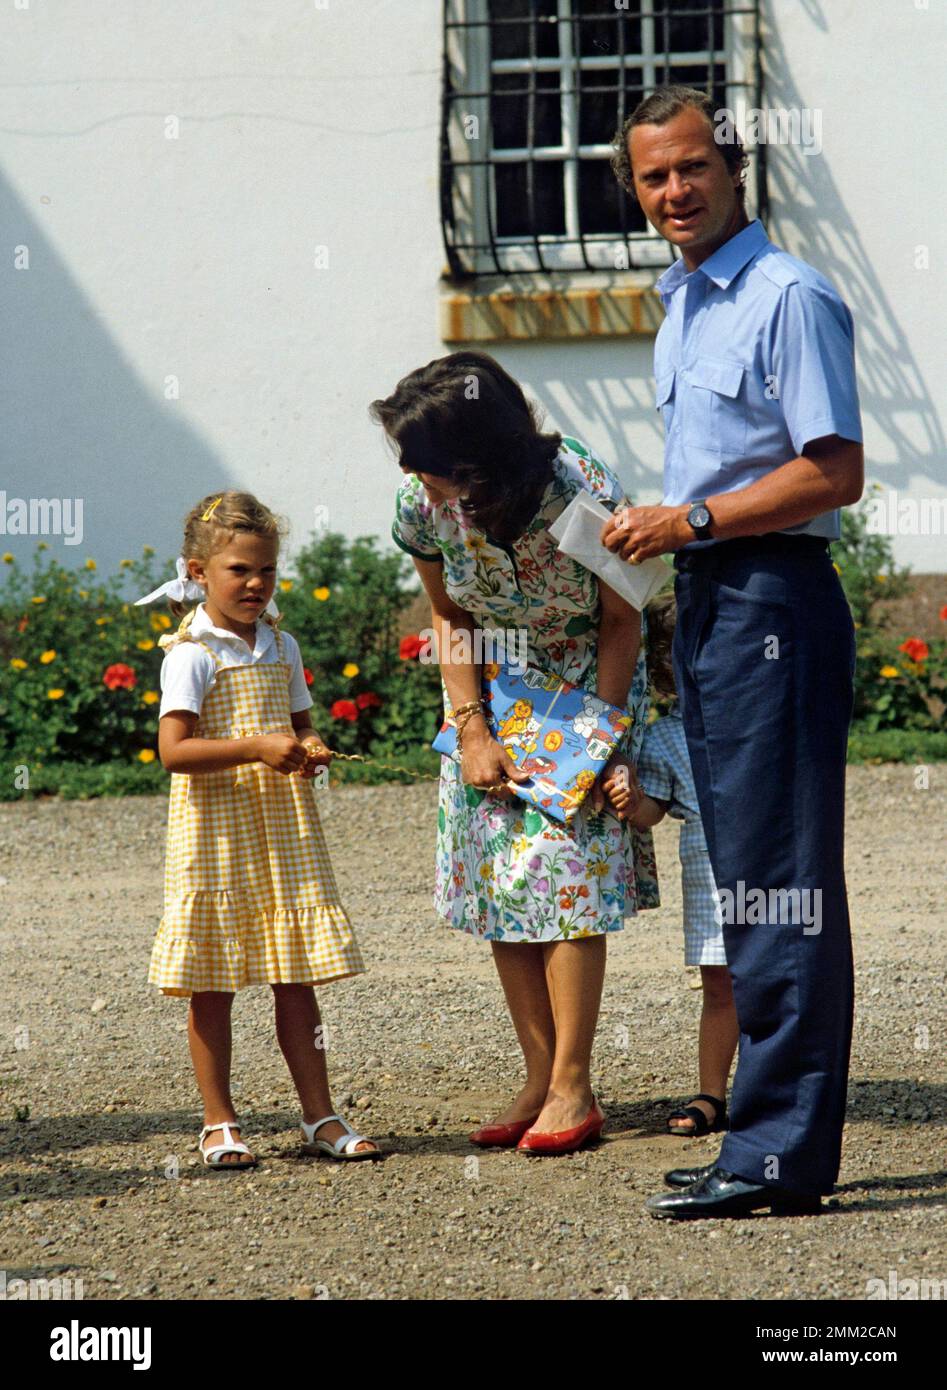 Carl XVI Gustaf, re di Svezia. Nato il 30 aprile 1946. Il re Carlo XVI Gustaf Regina Silvia i loro figli, principessa corona Victoria, principe Carl Philip, nella foto al castello di Solliden Öland in occasione delle celebrazioni per il compleanno di Victorias 1982. Foto Stock